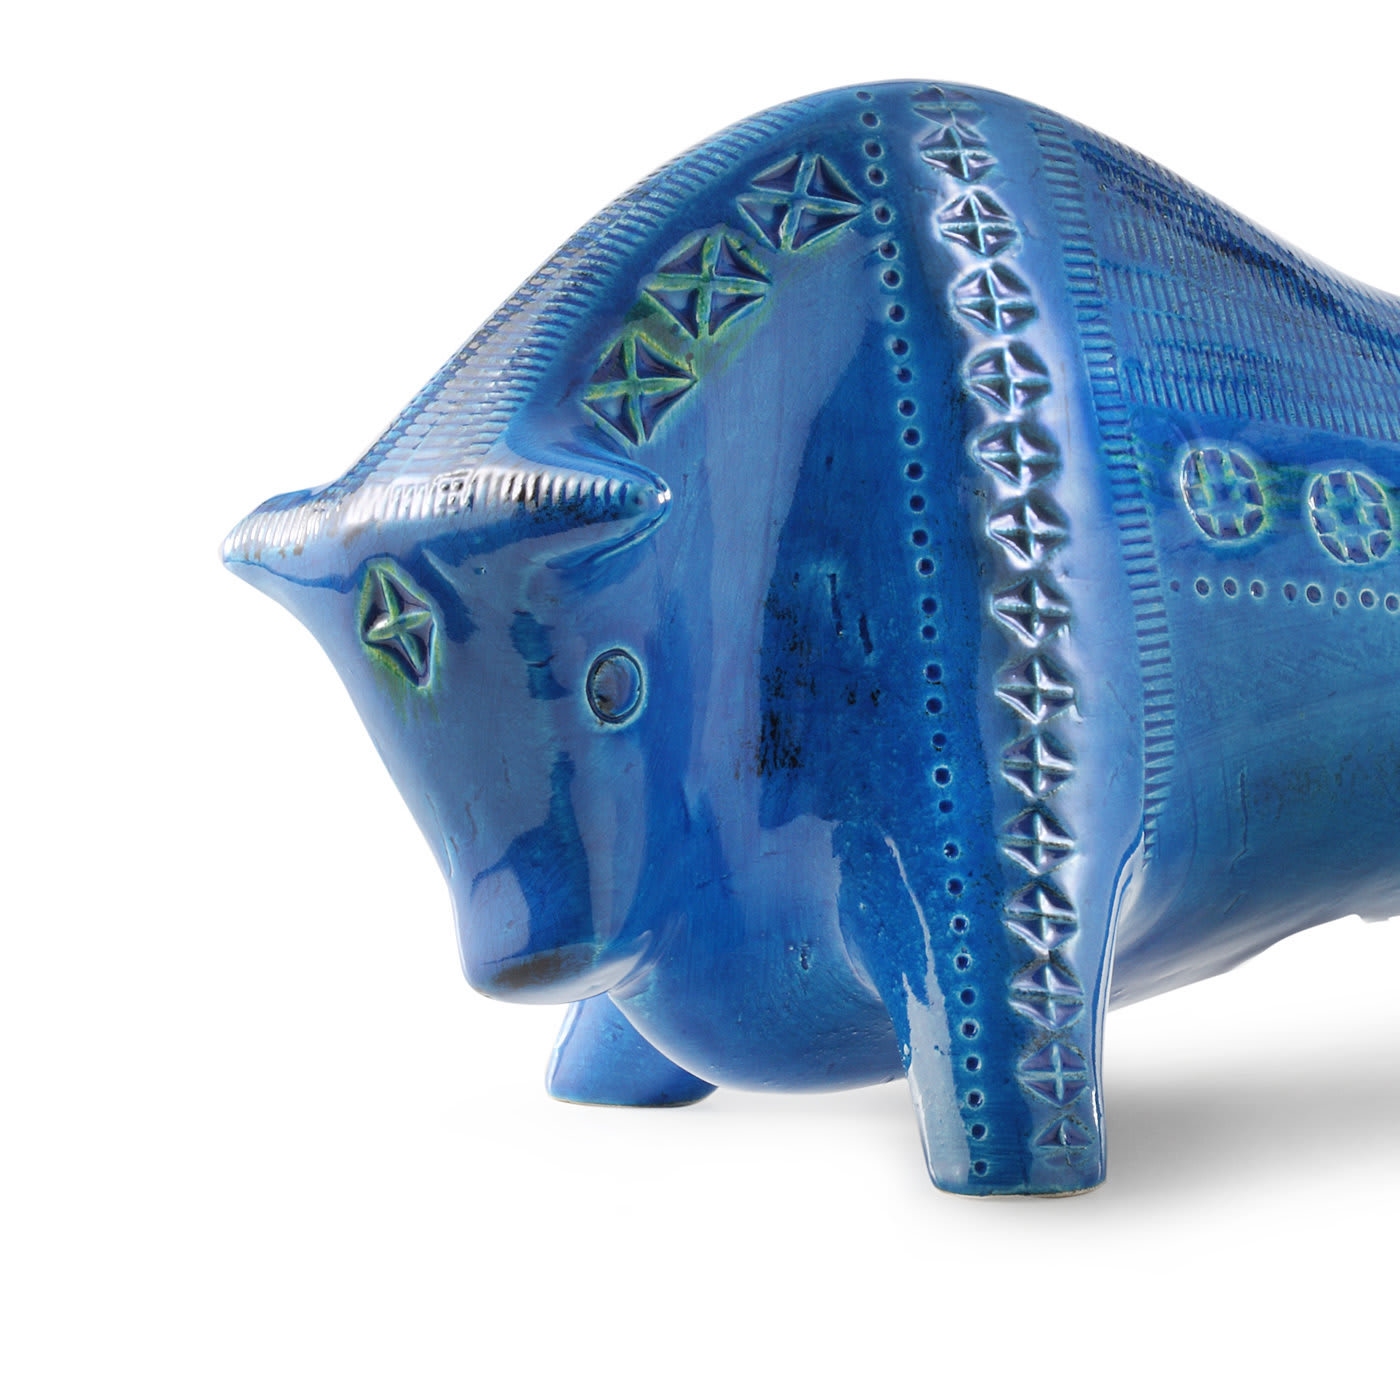 Blue Bull Sculpture by Aldo Londi - Bitossi Ceramiche